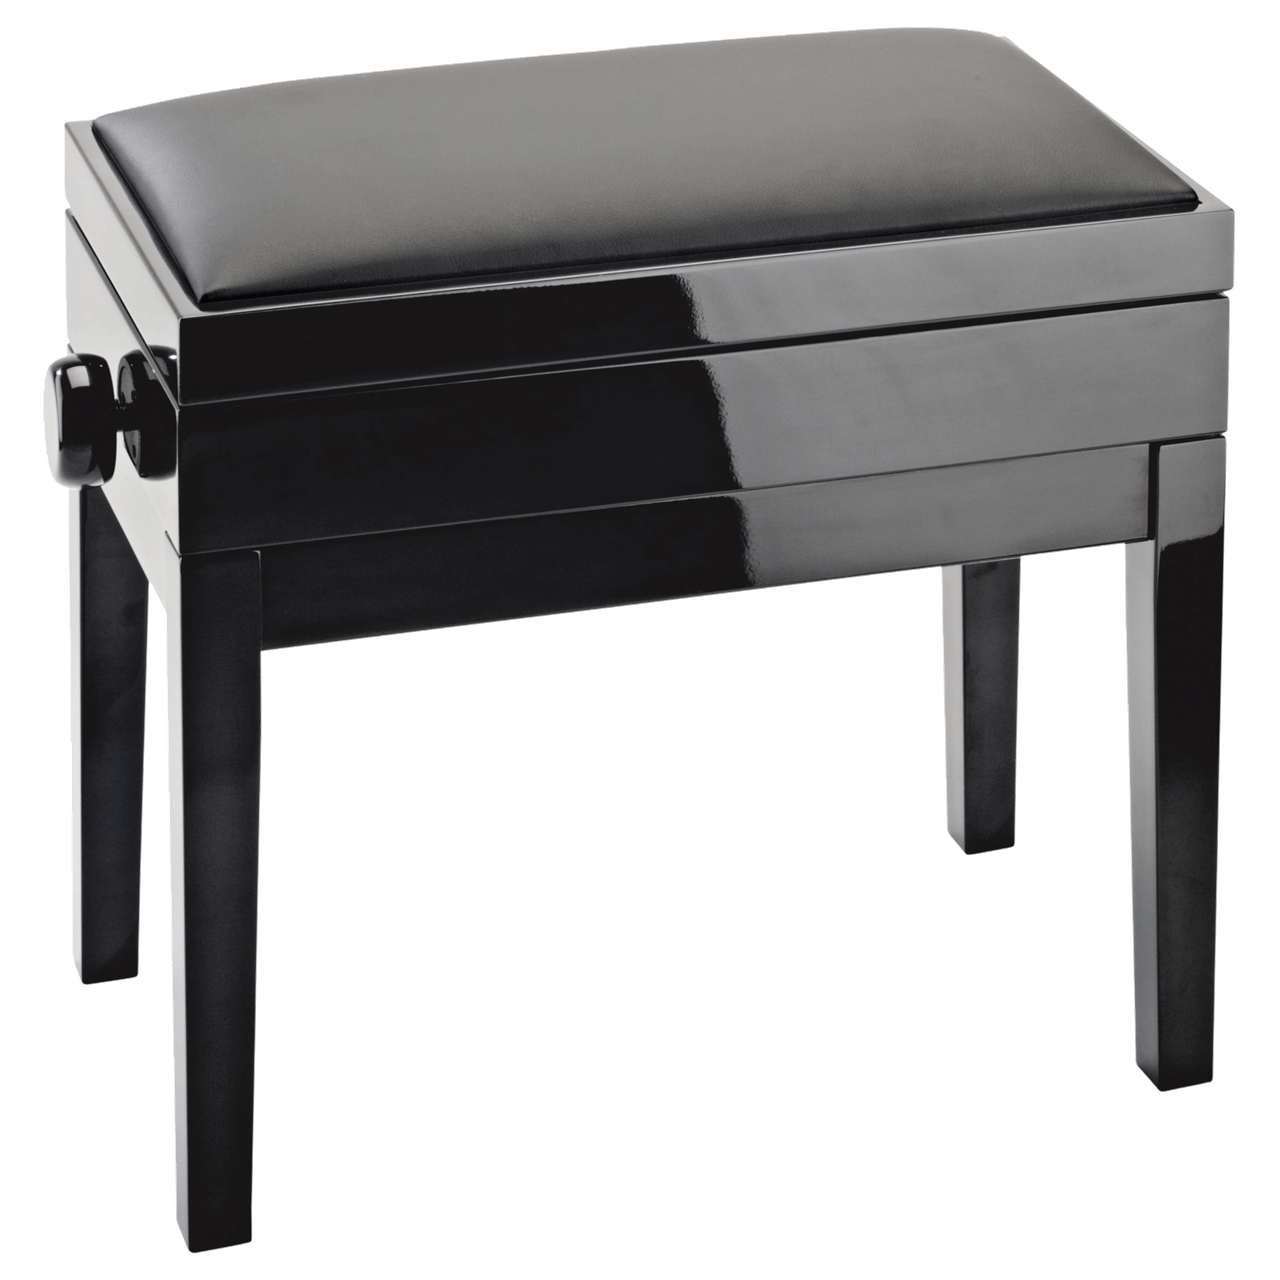 K&M Klavierbank mit Notenfach 13951 Bank schwarz glanz, Sitz Kunstleder schwarz